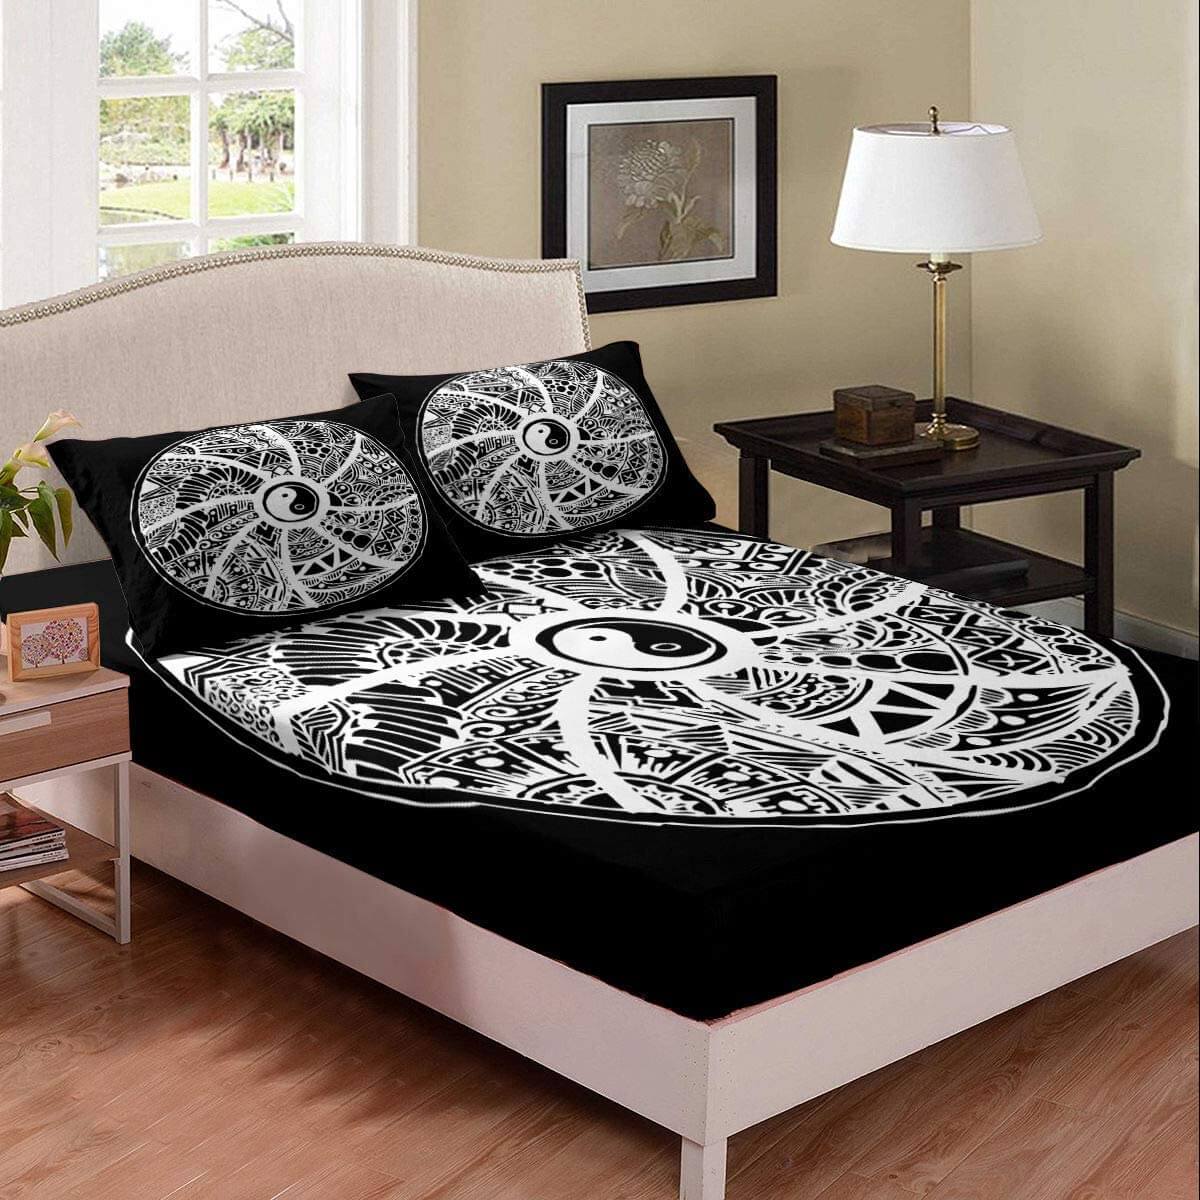 Drap giường màu đen họa tiết thái cực 